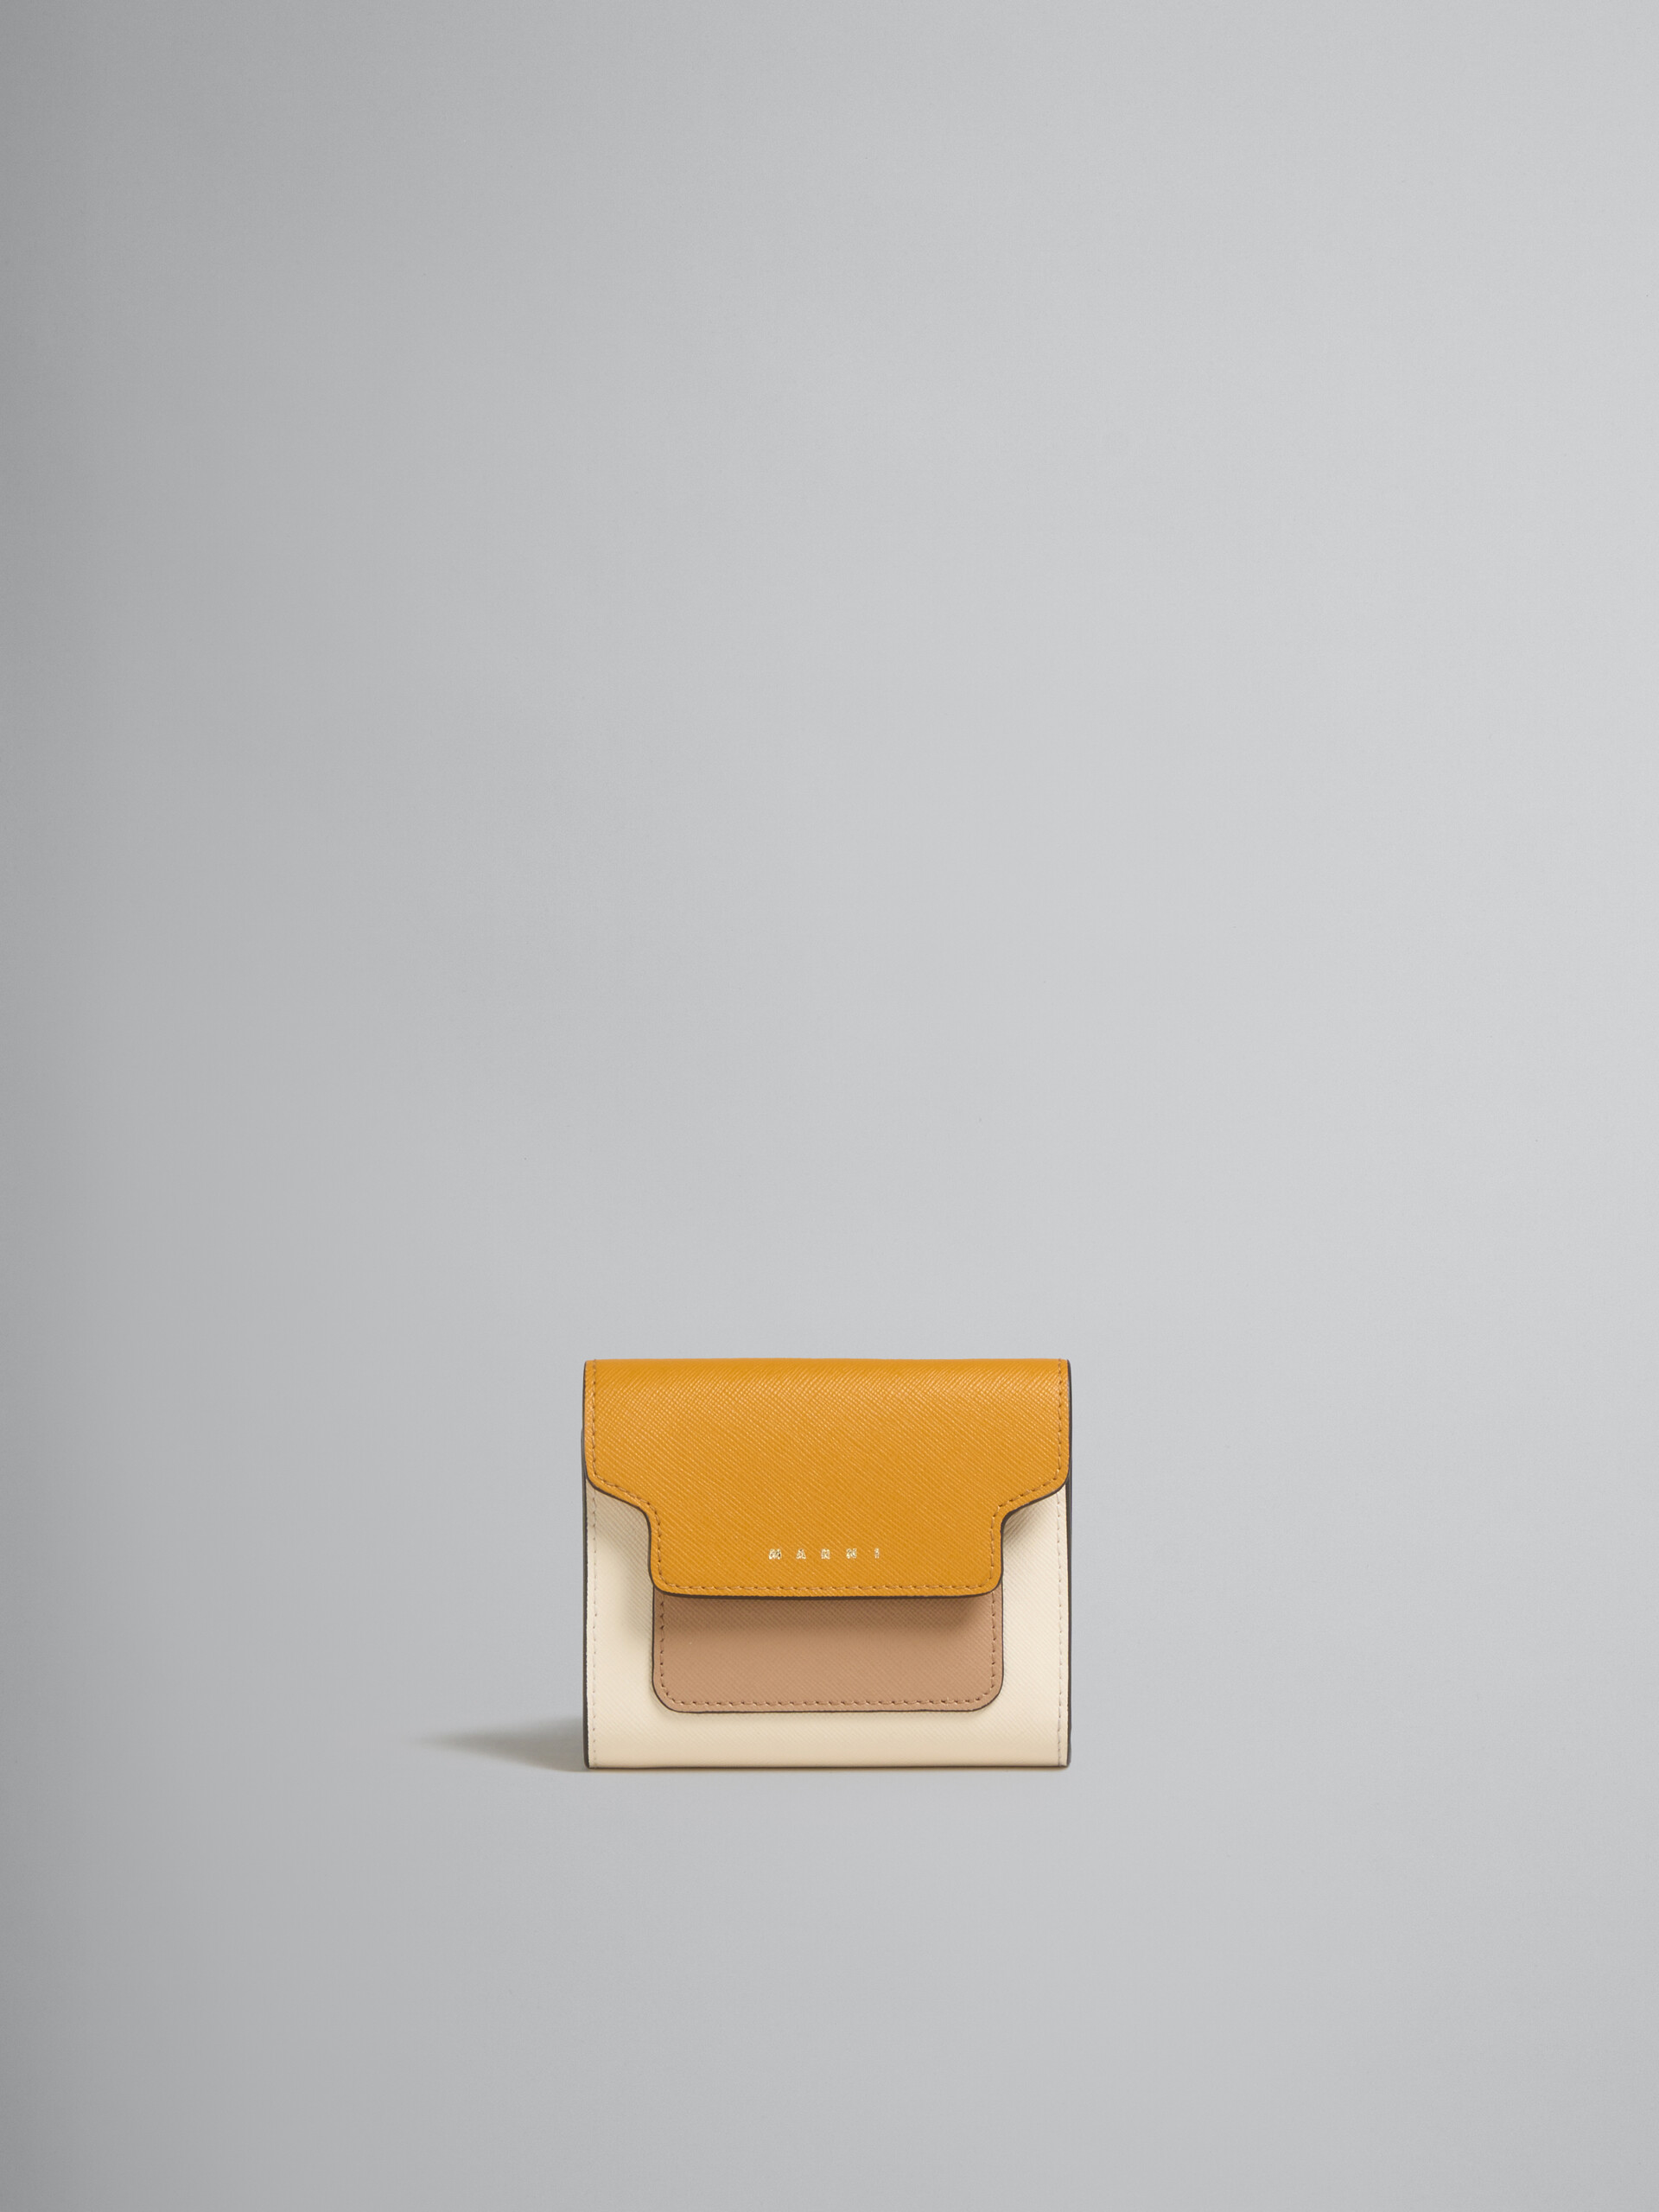 MARNIで人気のお財布は、サフィアーノレザー製ウオレット